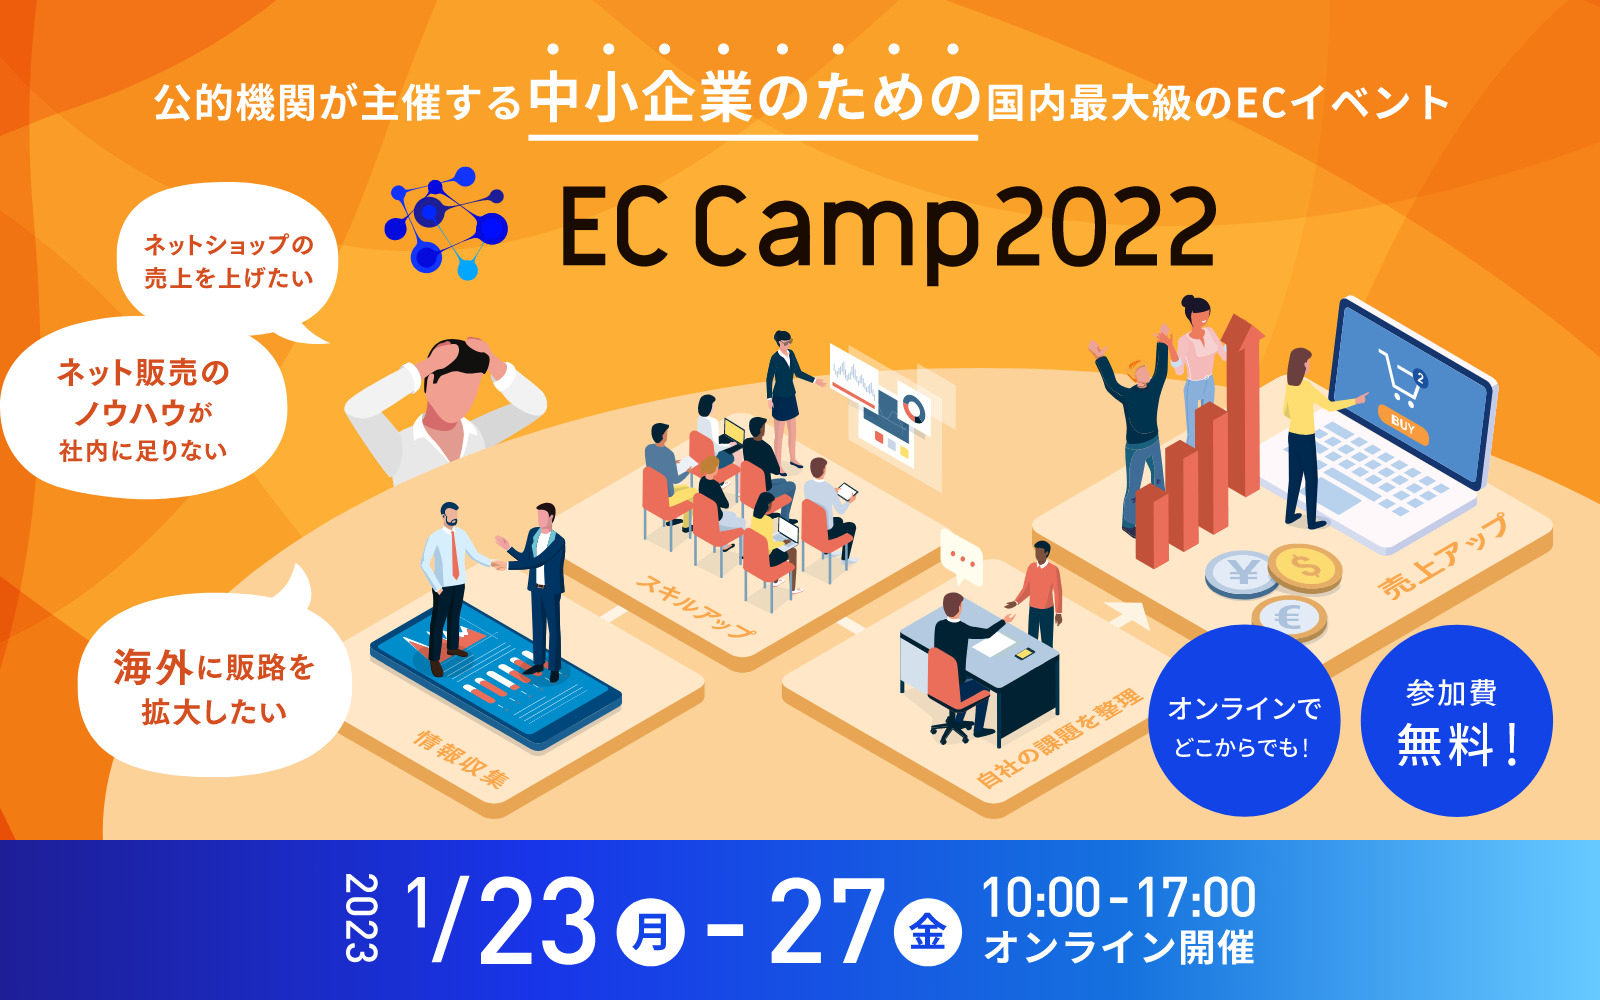 EC Camp 2022